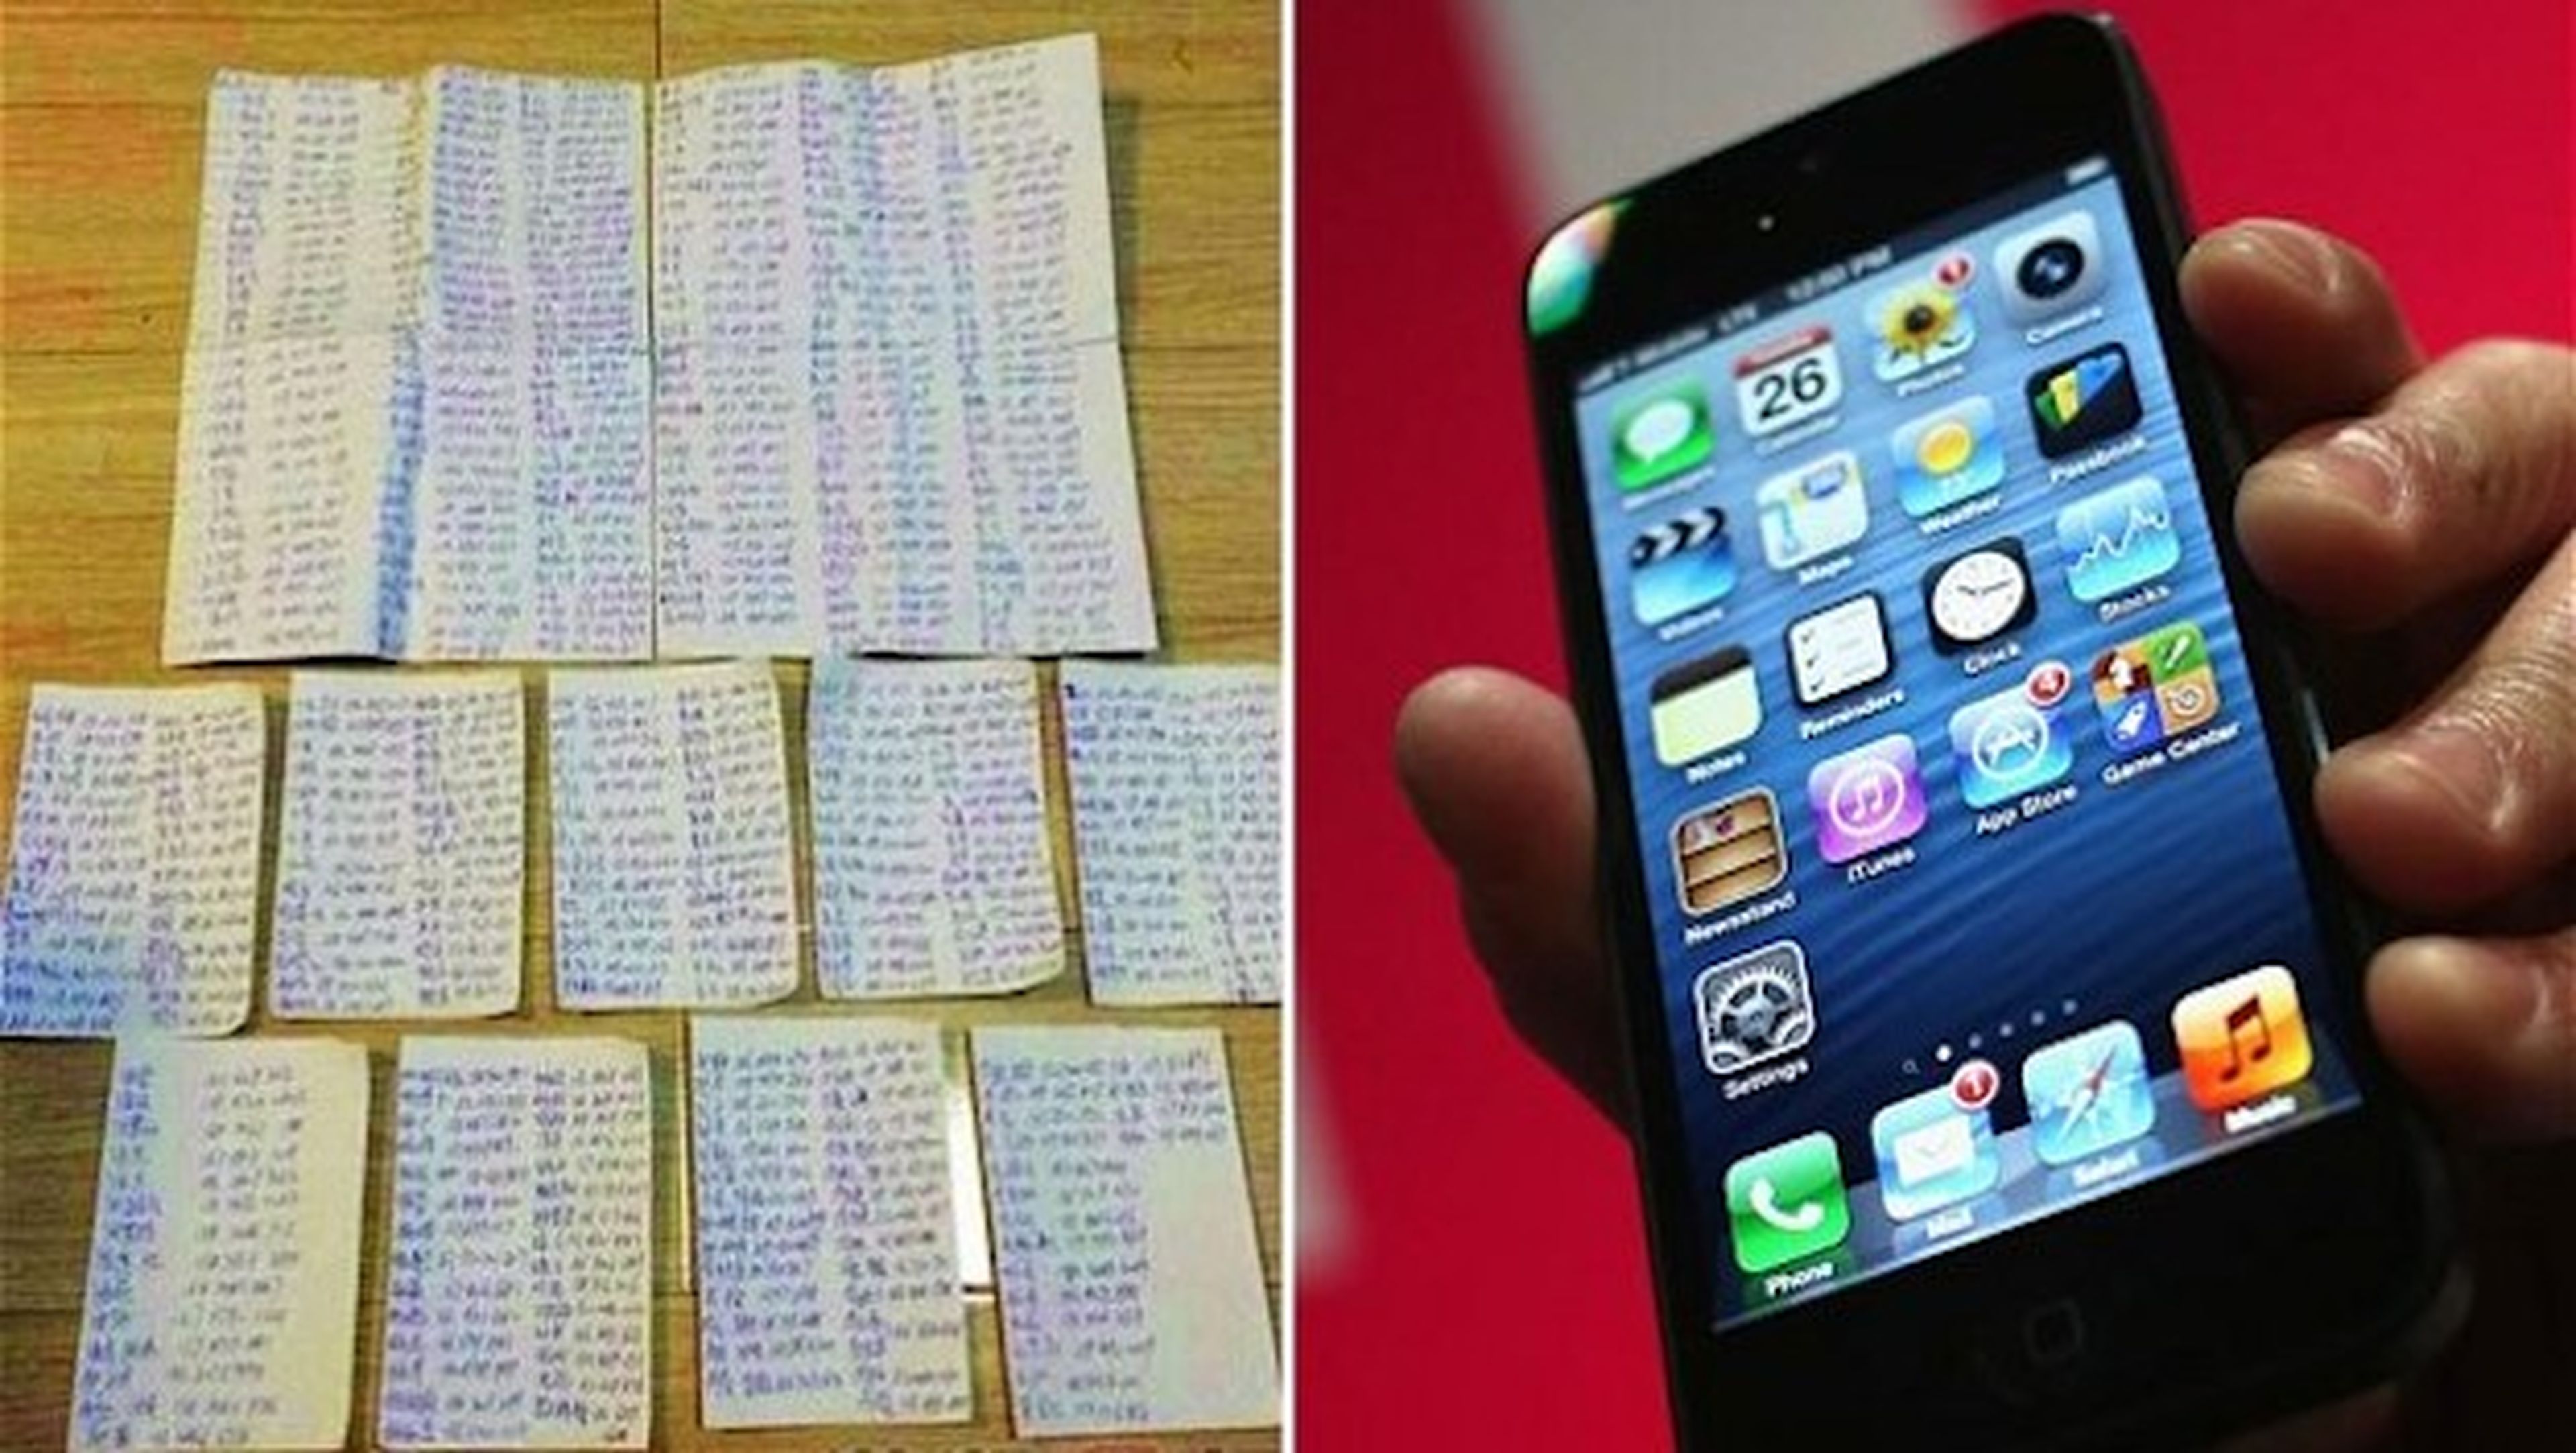 Ladrón de iPhone envía SIM y lista de contactos a víctima